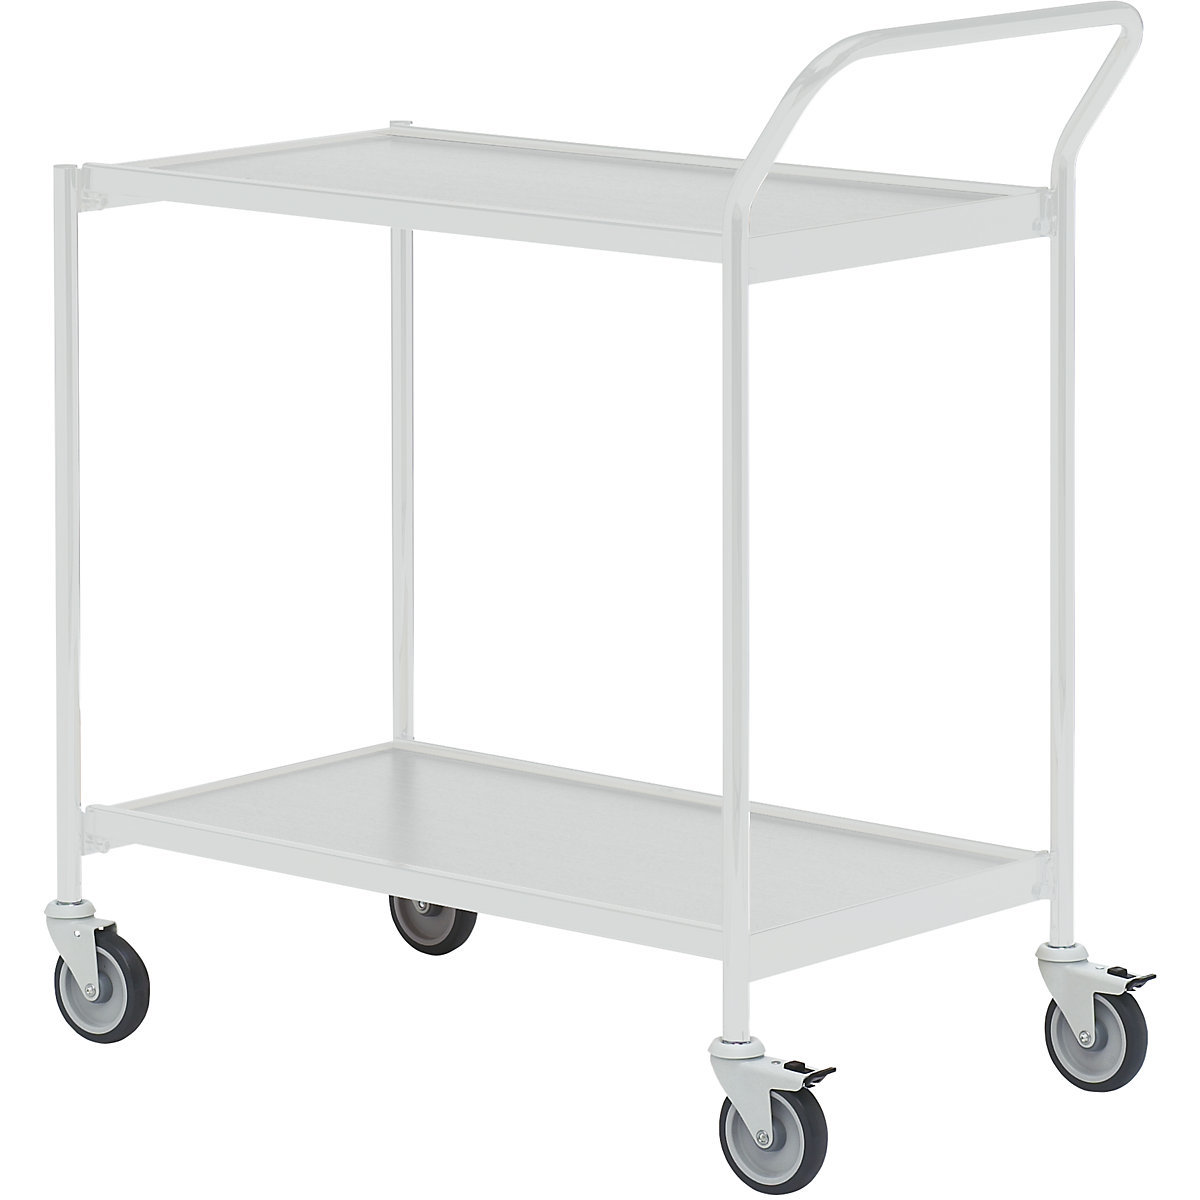 Stolový vozík – HelgeNyberg, 2 etáže, d x š 800 x 420 mm, šedá / šedá, od 5 ks-37